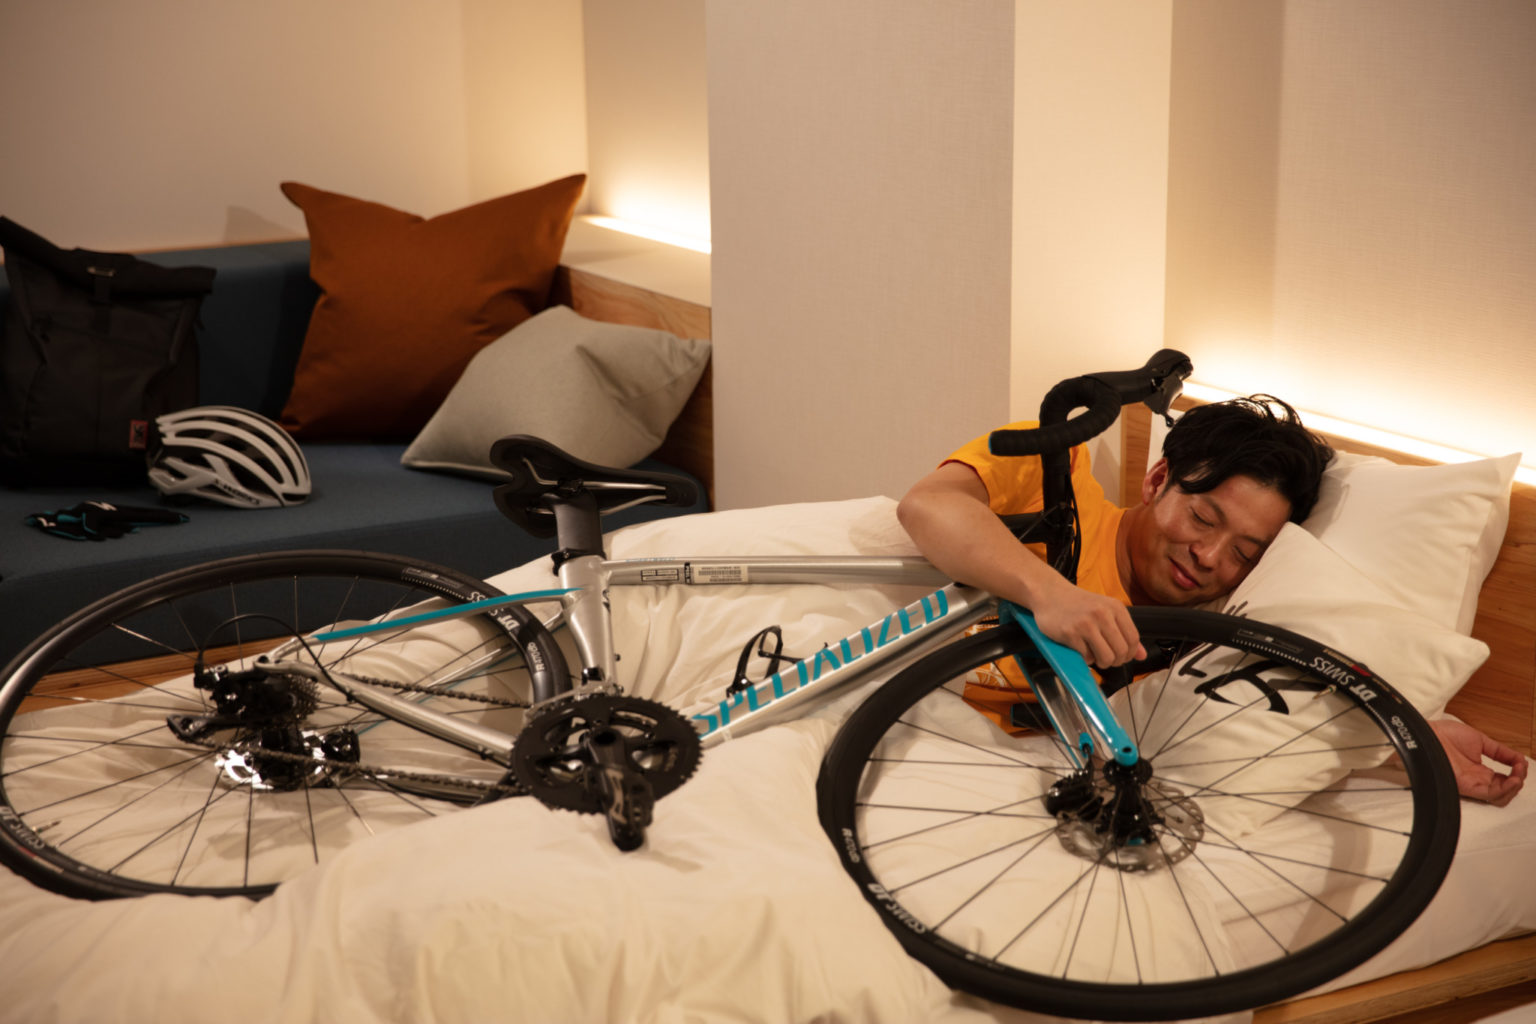 汚れがついても落ちやすい自転車用シーツでスヤスヤ。この方、とっても幸せそう……！自転車と同じベッドで休む姿をSNSにアップするのが密かな人気だとか。